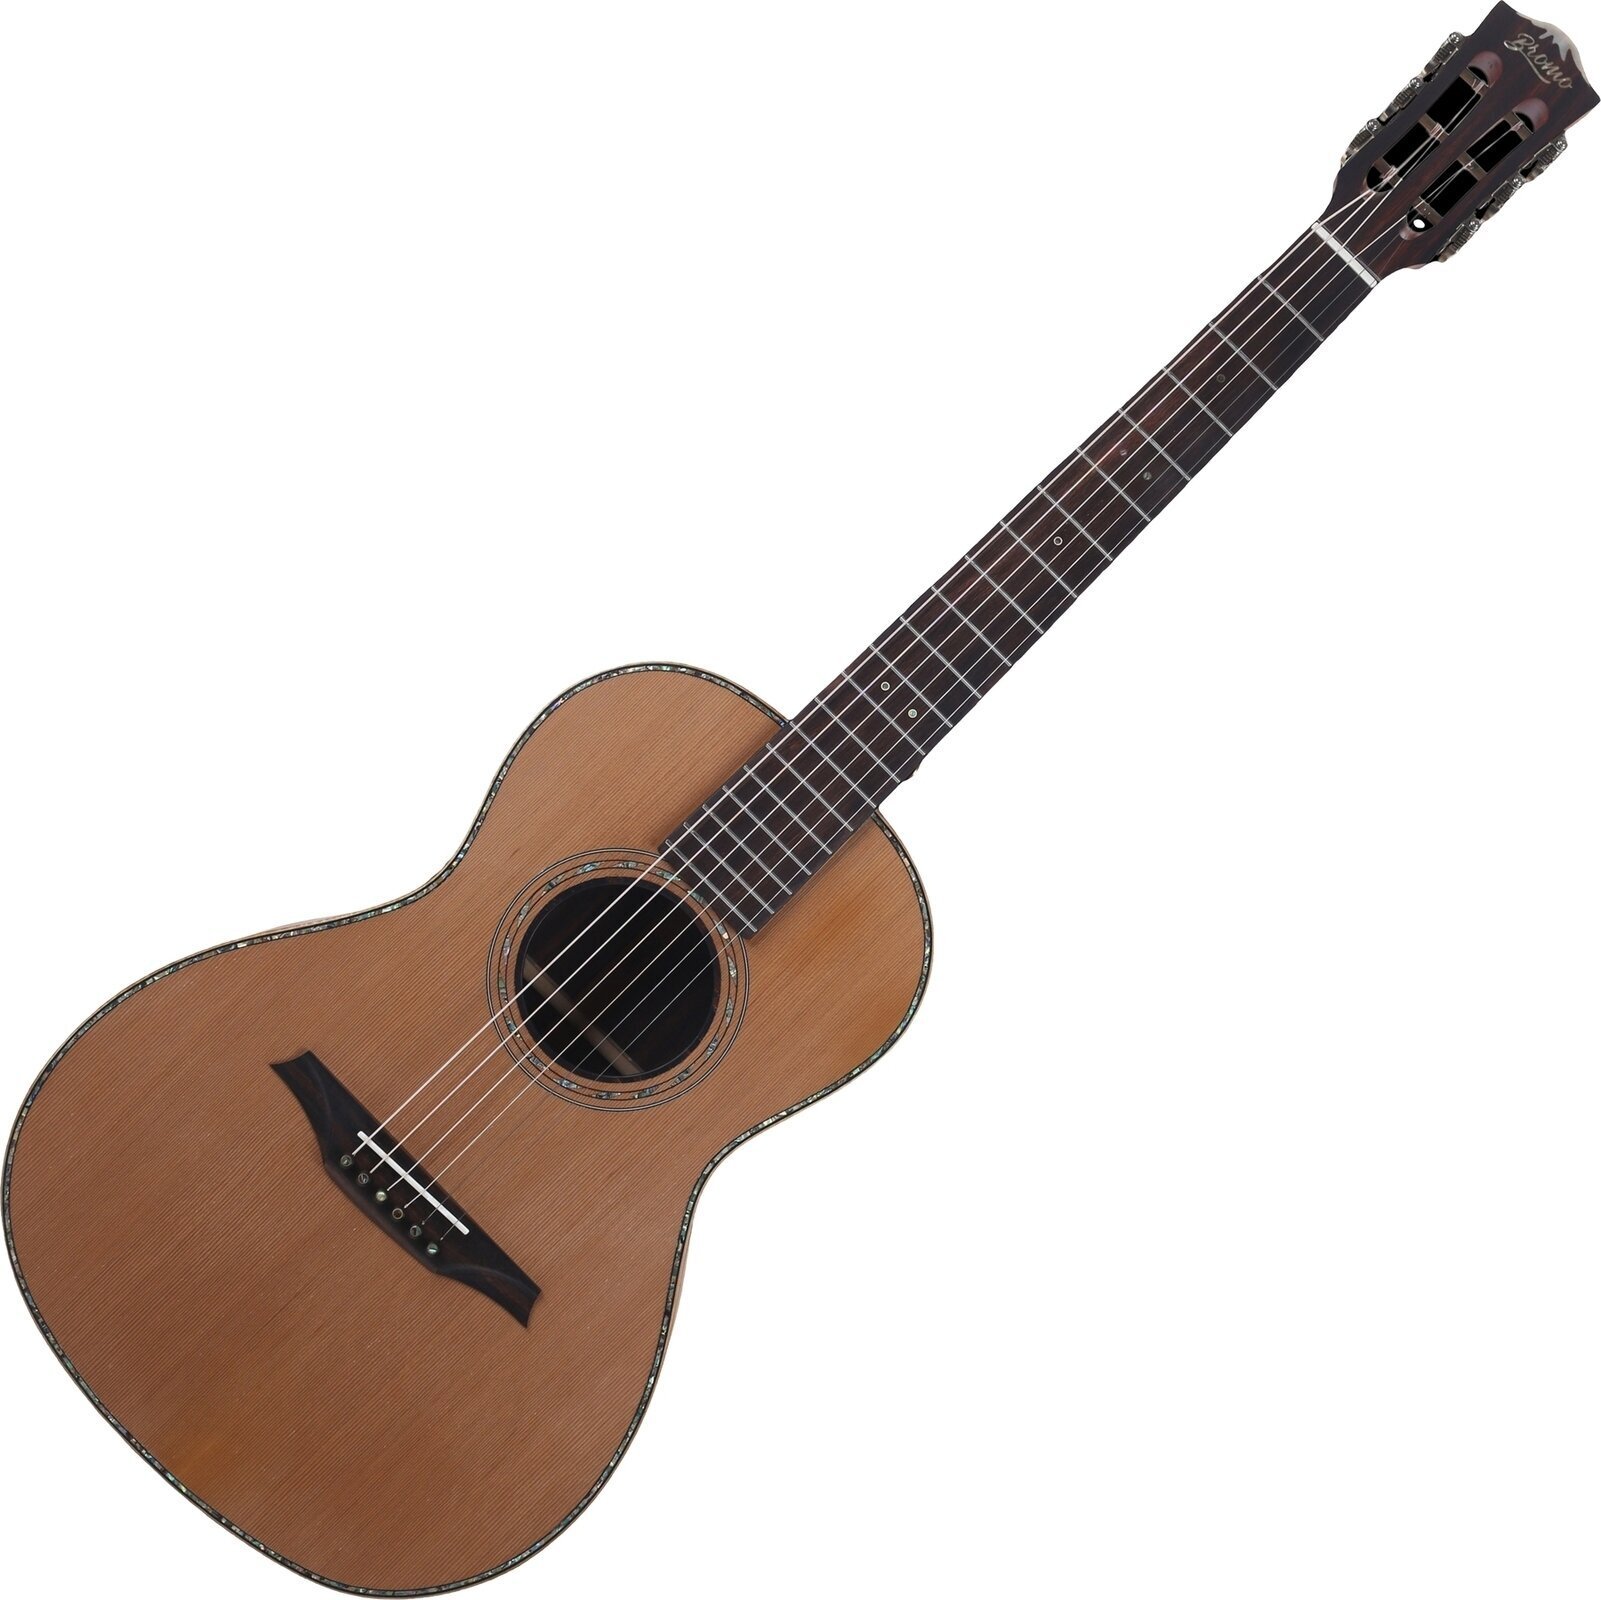 Electro-acoustic guitar Bromo BAR6E Natural